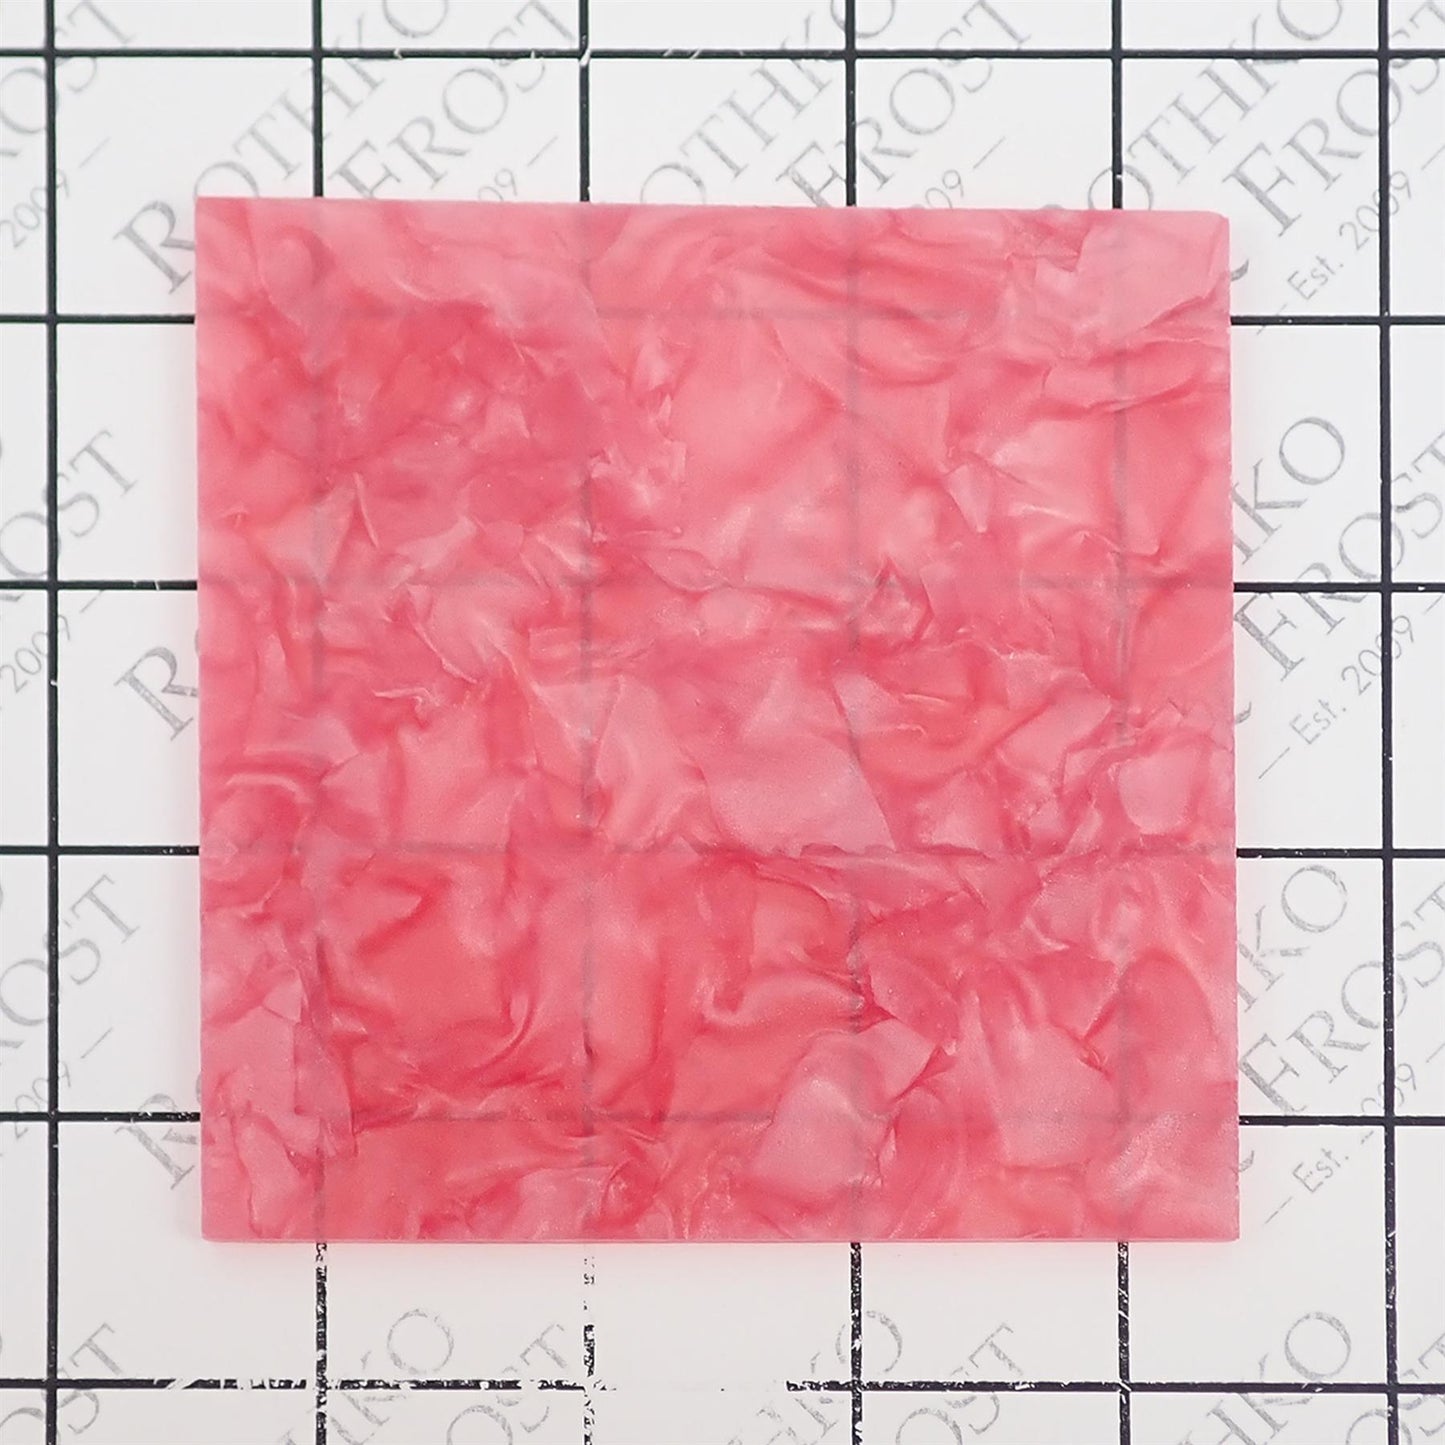 [Incudo] Pink Pearloid Acrylic Sheet - 1000x600x3mm